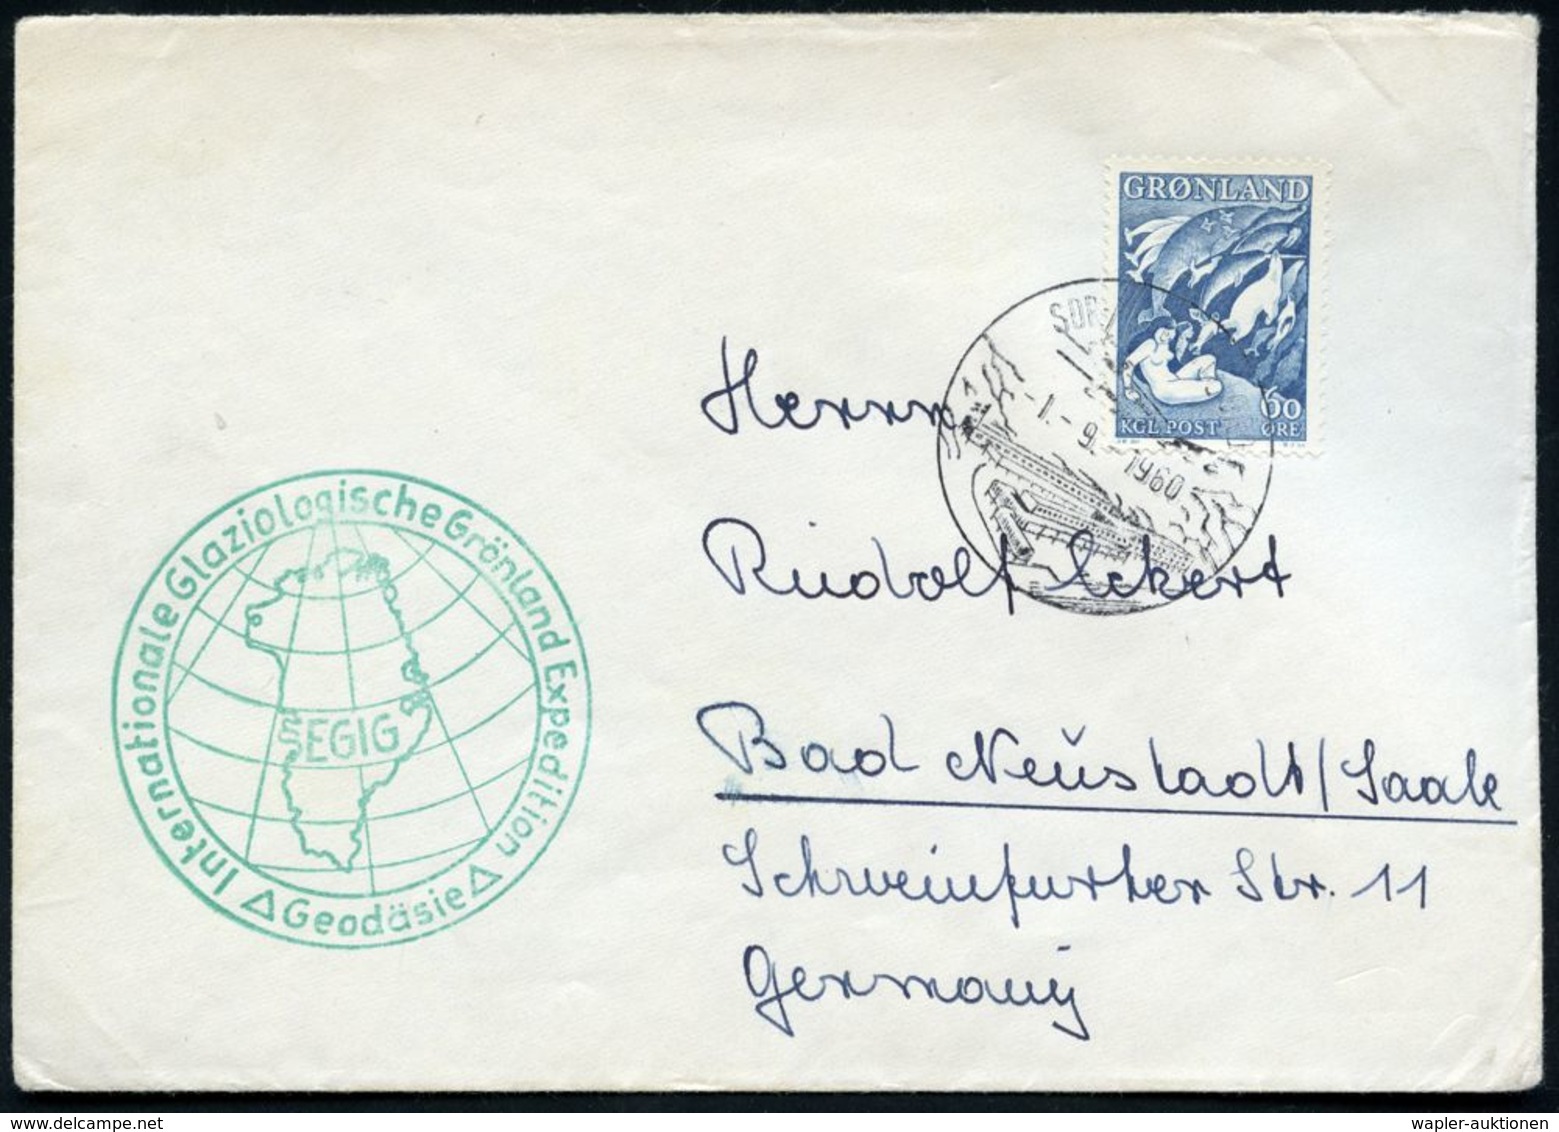 GRÖNLAND 1960 (1.9.) HWSt.: SDR. STRÖMFJORD (Gebäude) A.EF 60 Ö. "Mutter Des Meeers" (Wal-Motiv!) + Grüner HdN: Internat - Arktis Expeditionen